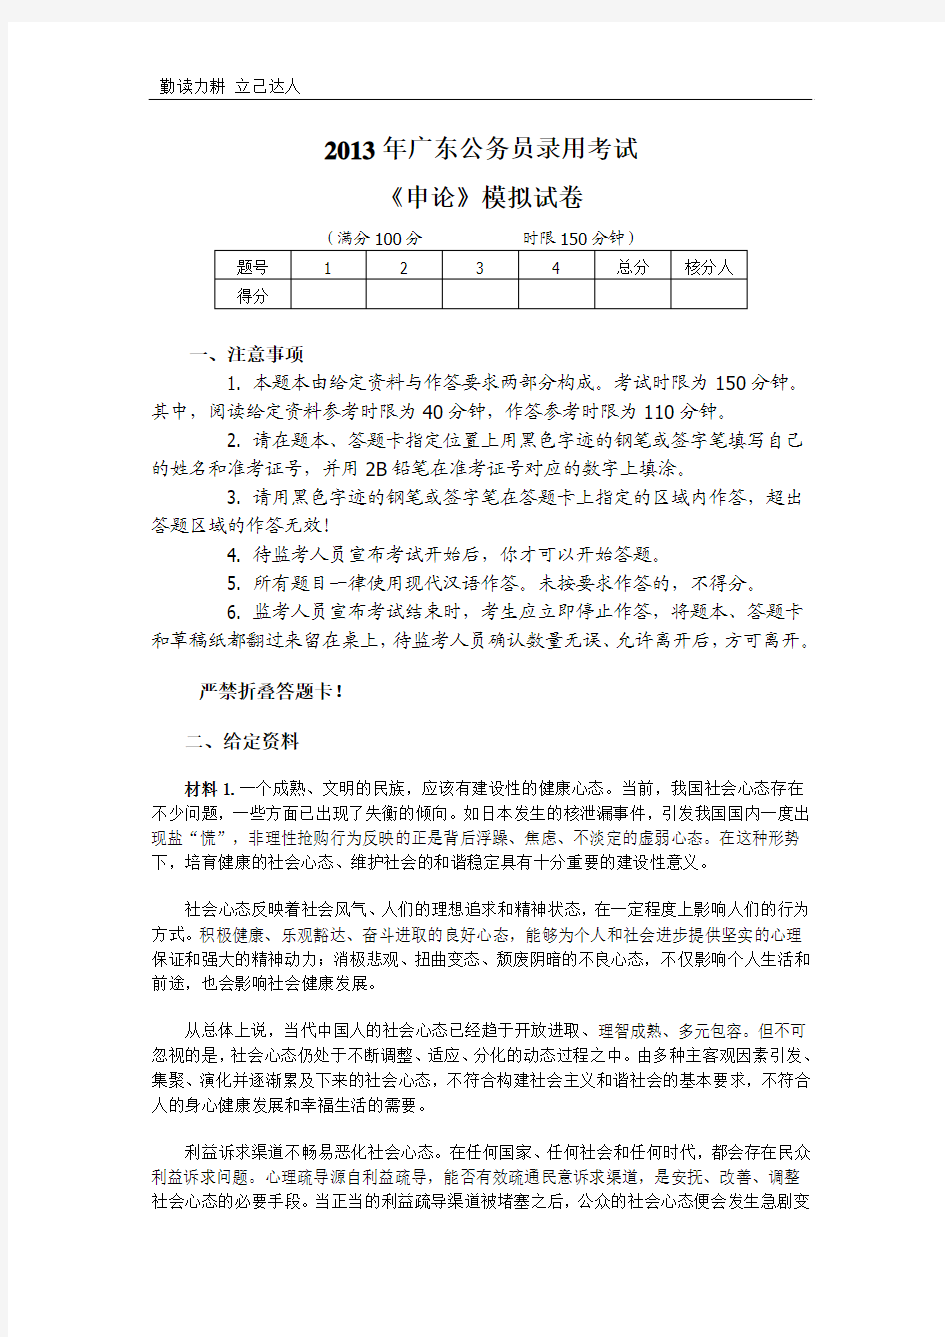 A2013年广东省公务员考试申论模拟试题及答案解析(卷三)